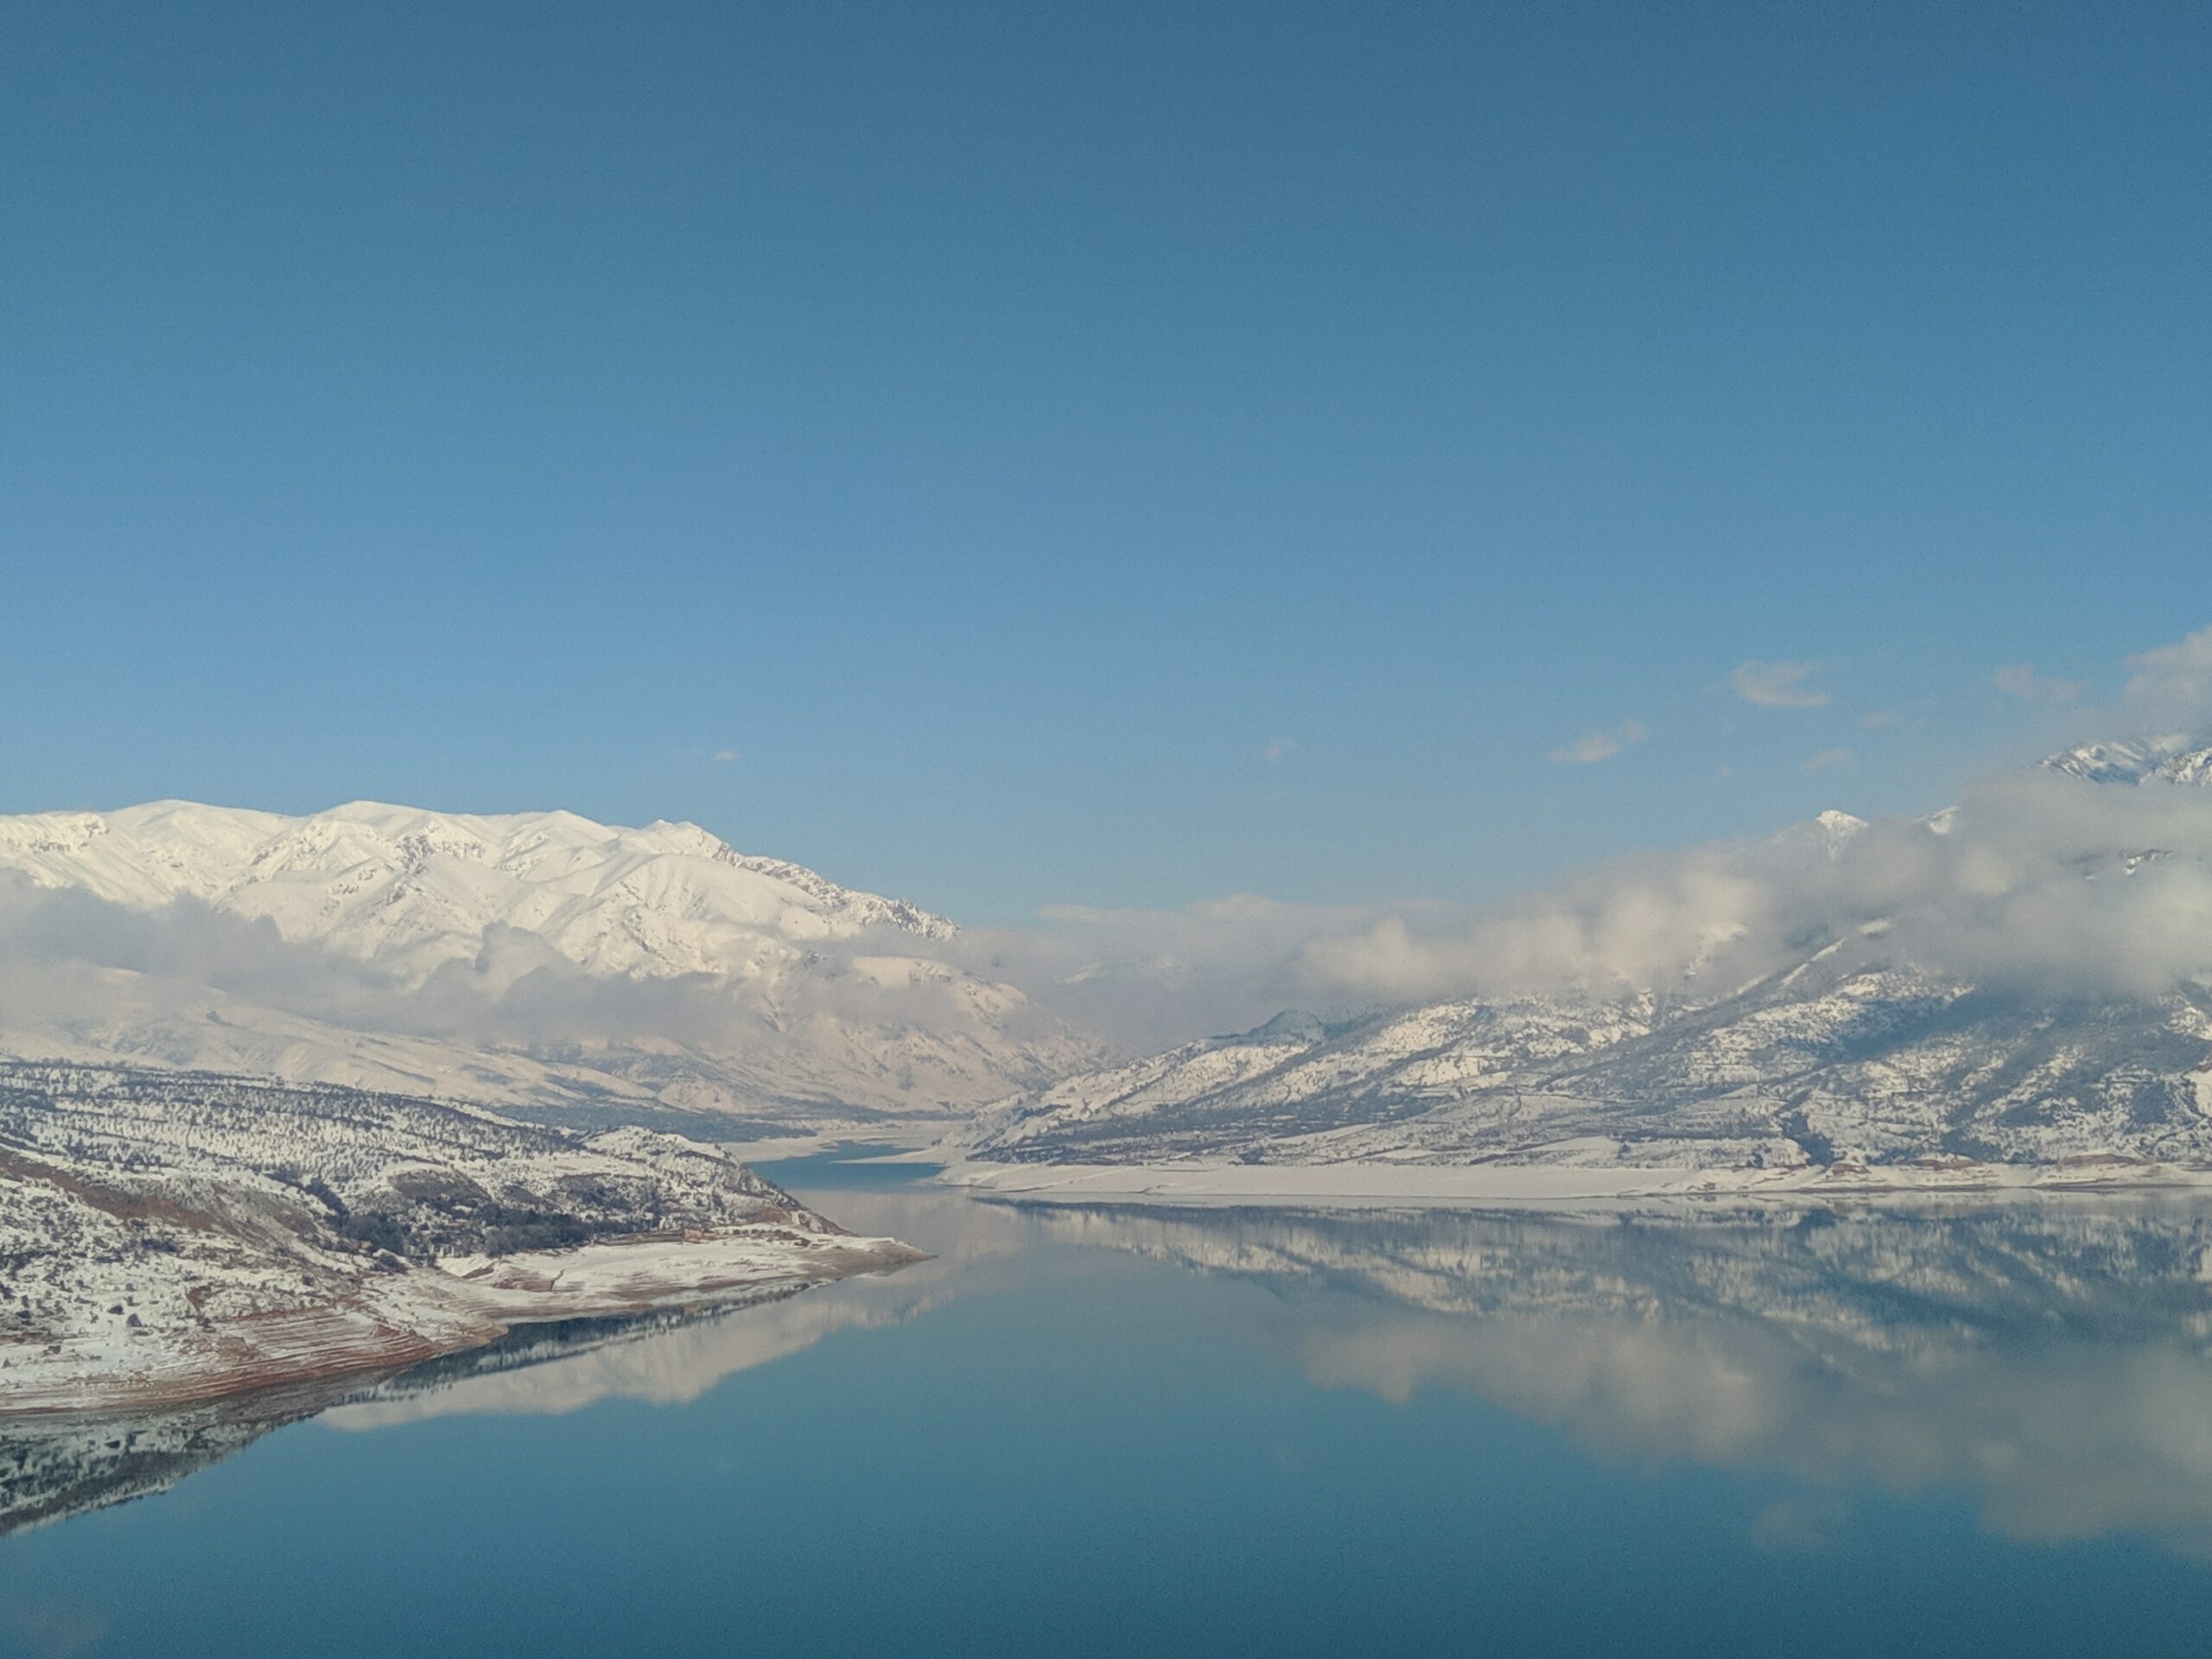 Montanhas com neve atrás de um grande lago calmo refletindo o céu azul em Uzbequistão - Representa seguro viagem Uzbequistão.